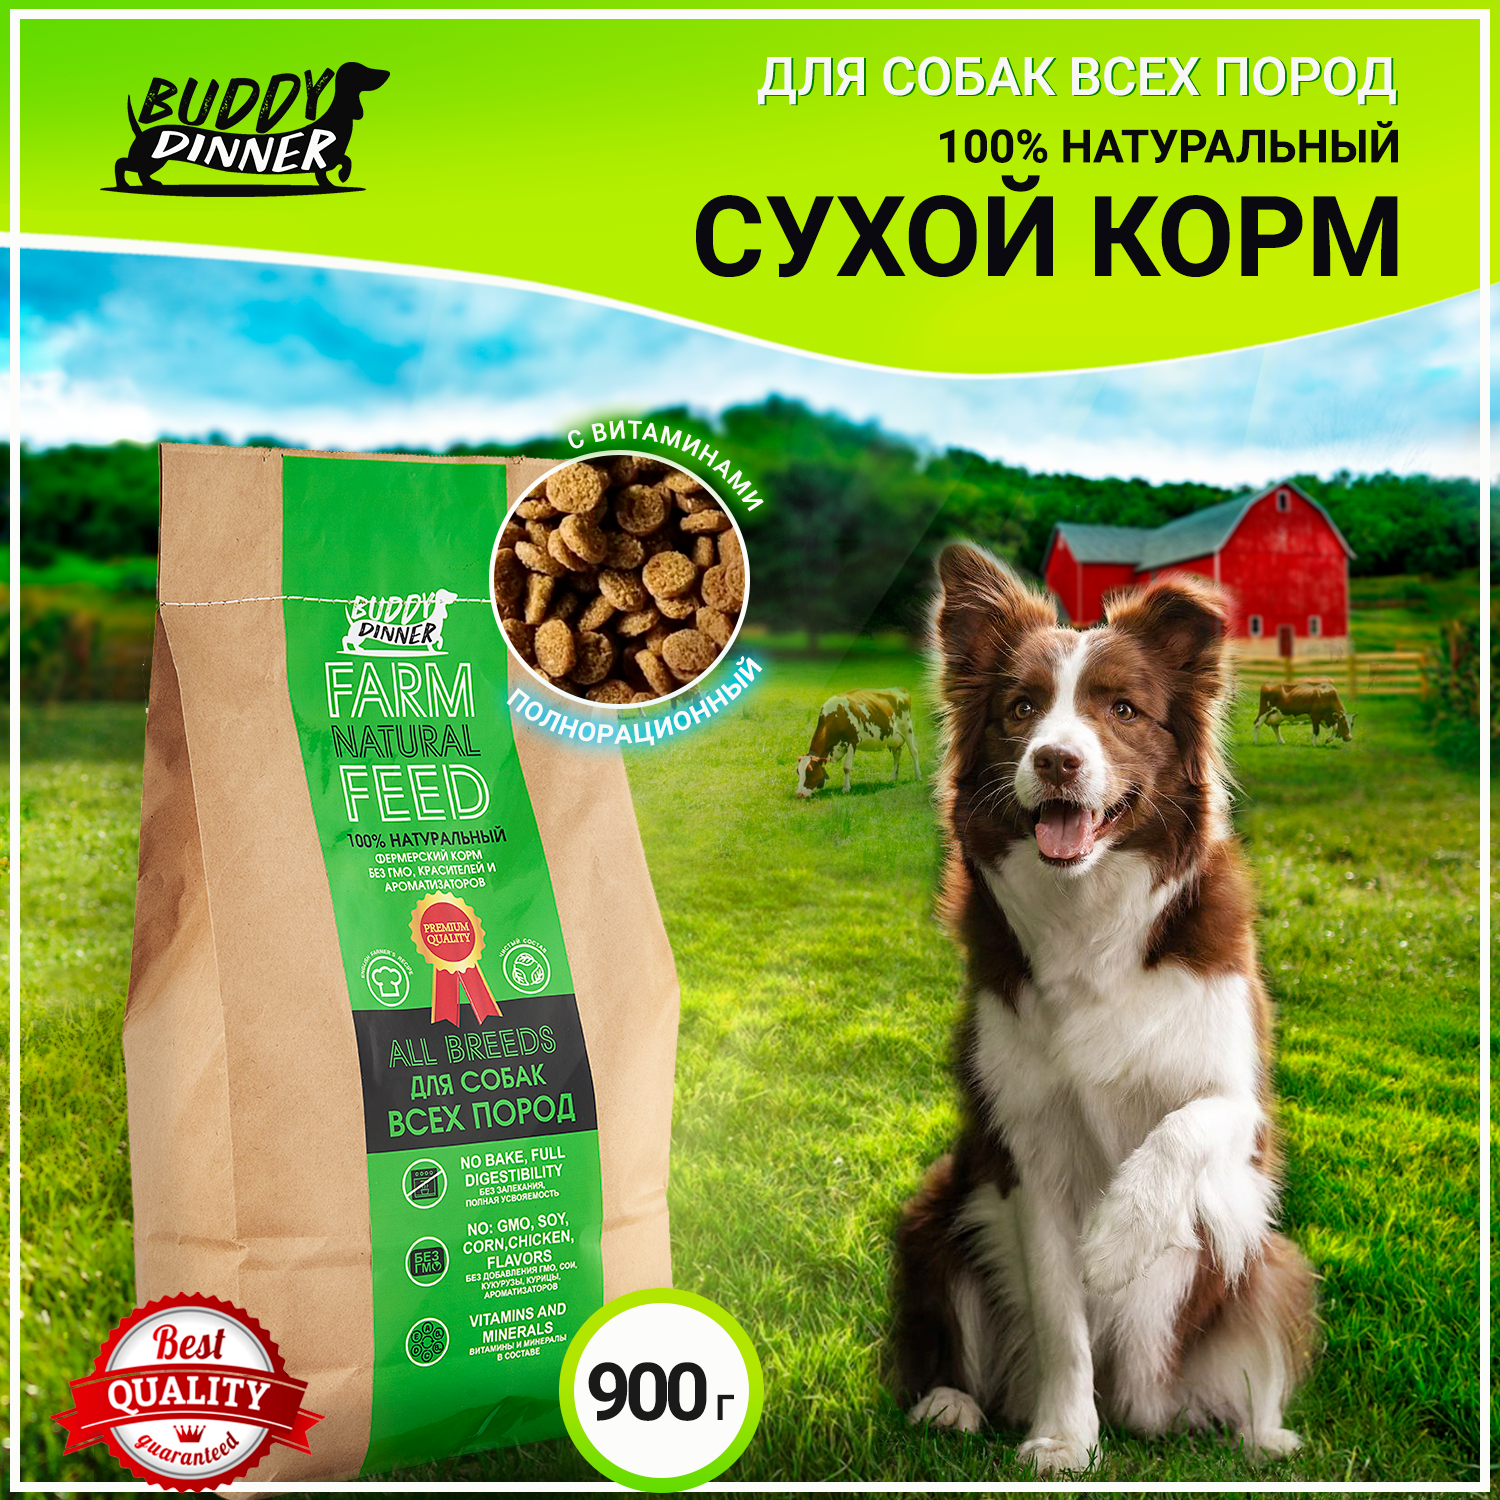 Сухой корм для собак BUDDY DINNER Eco Line для всех пород собак, гипоаллергенный, полнорационный, 100% натуральный состав, с говядиной, 900 г